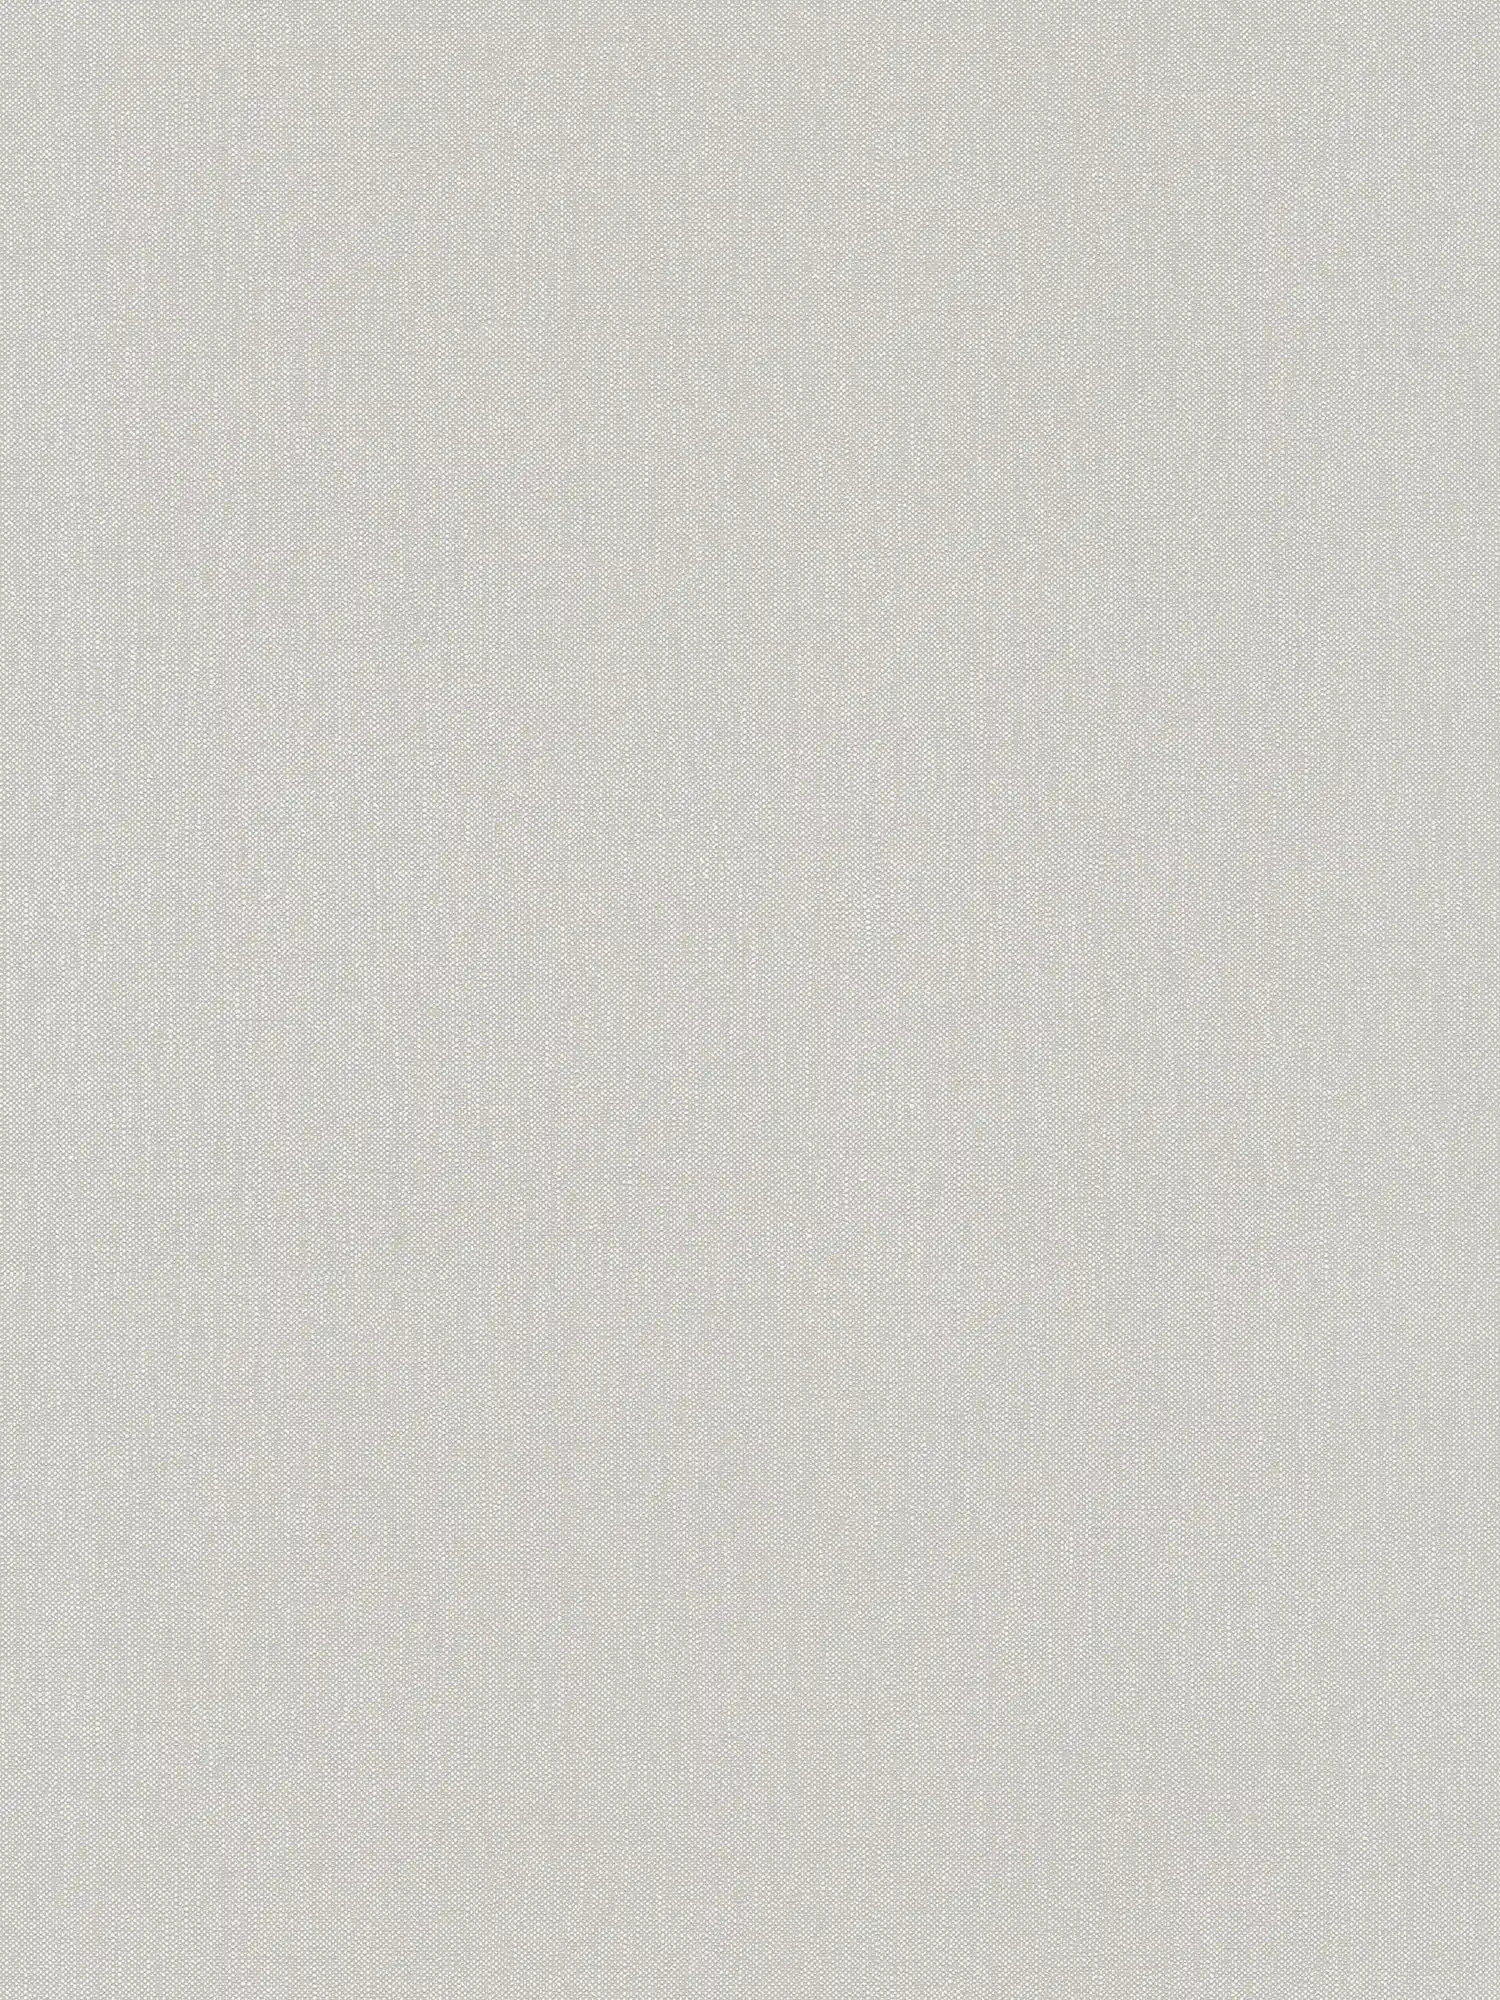 Carta da parati beige effetto lino con motivo a struttura tessile
